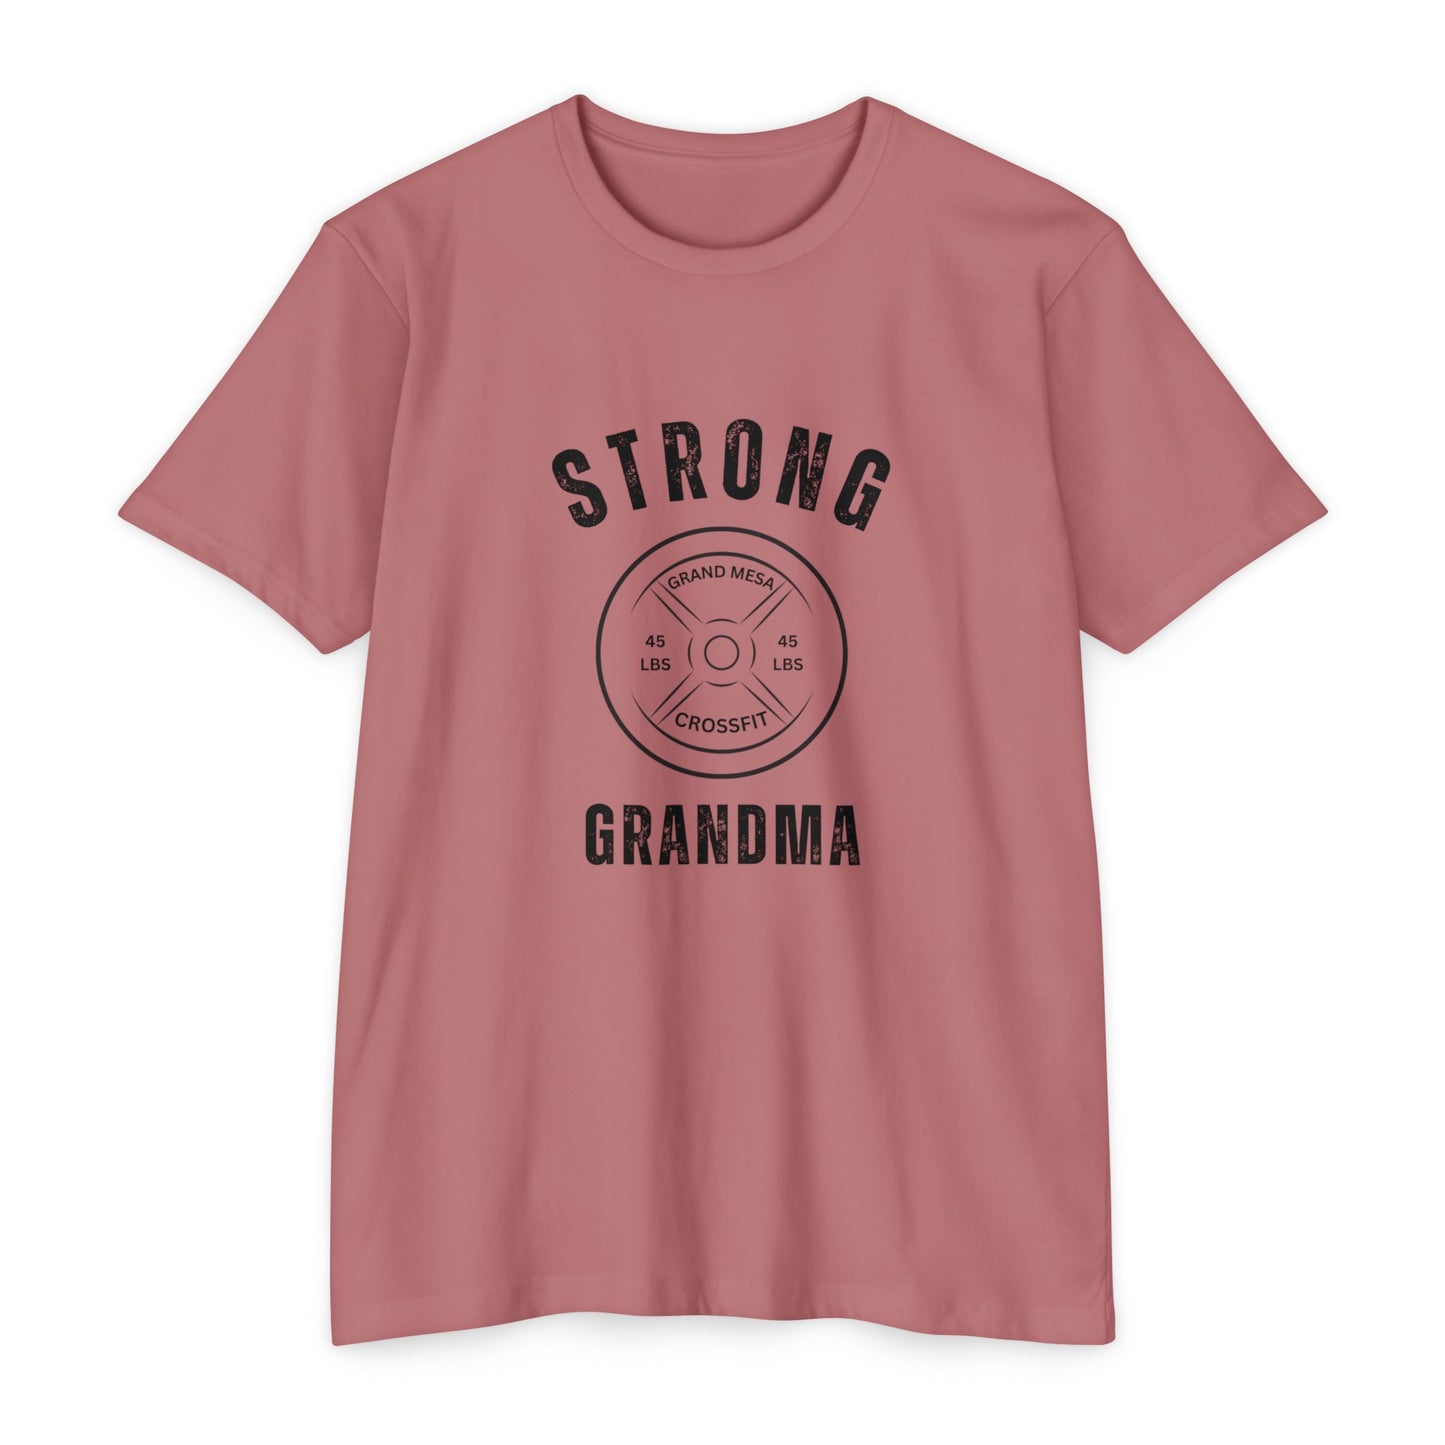 Strong Grandma Tee